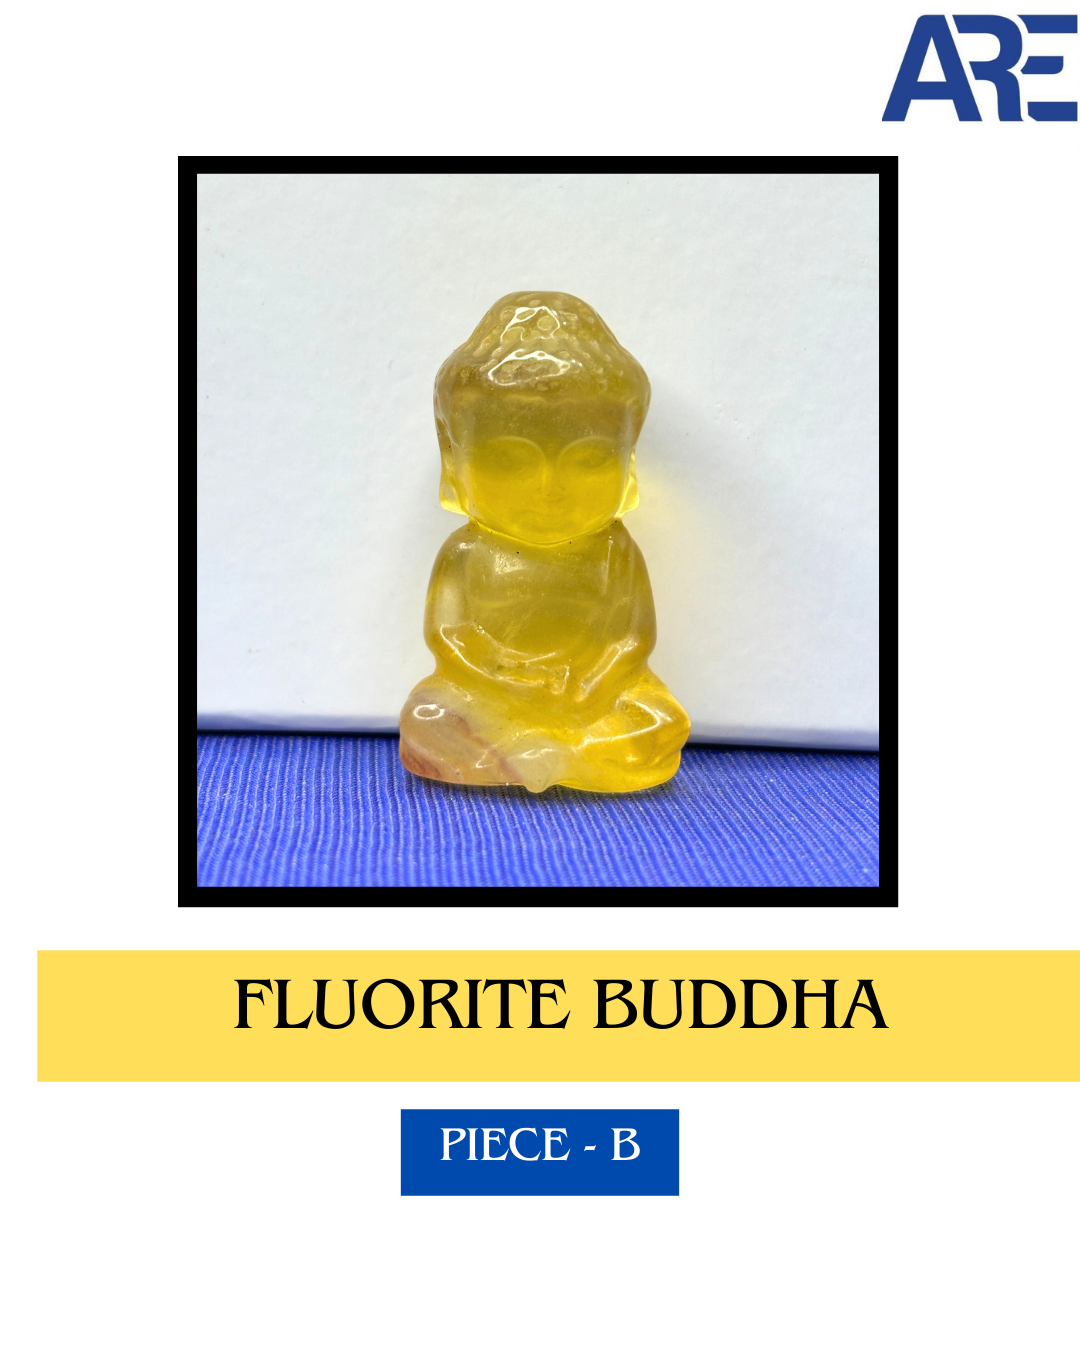 Fluorite Buddhas